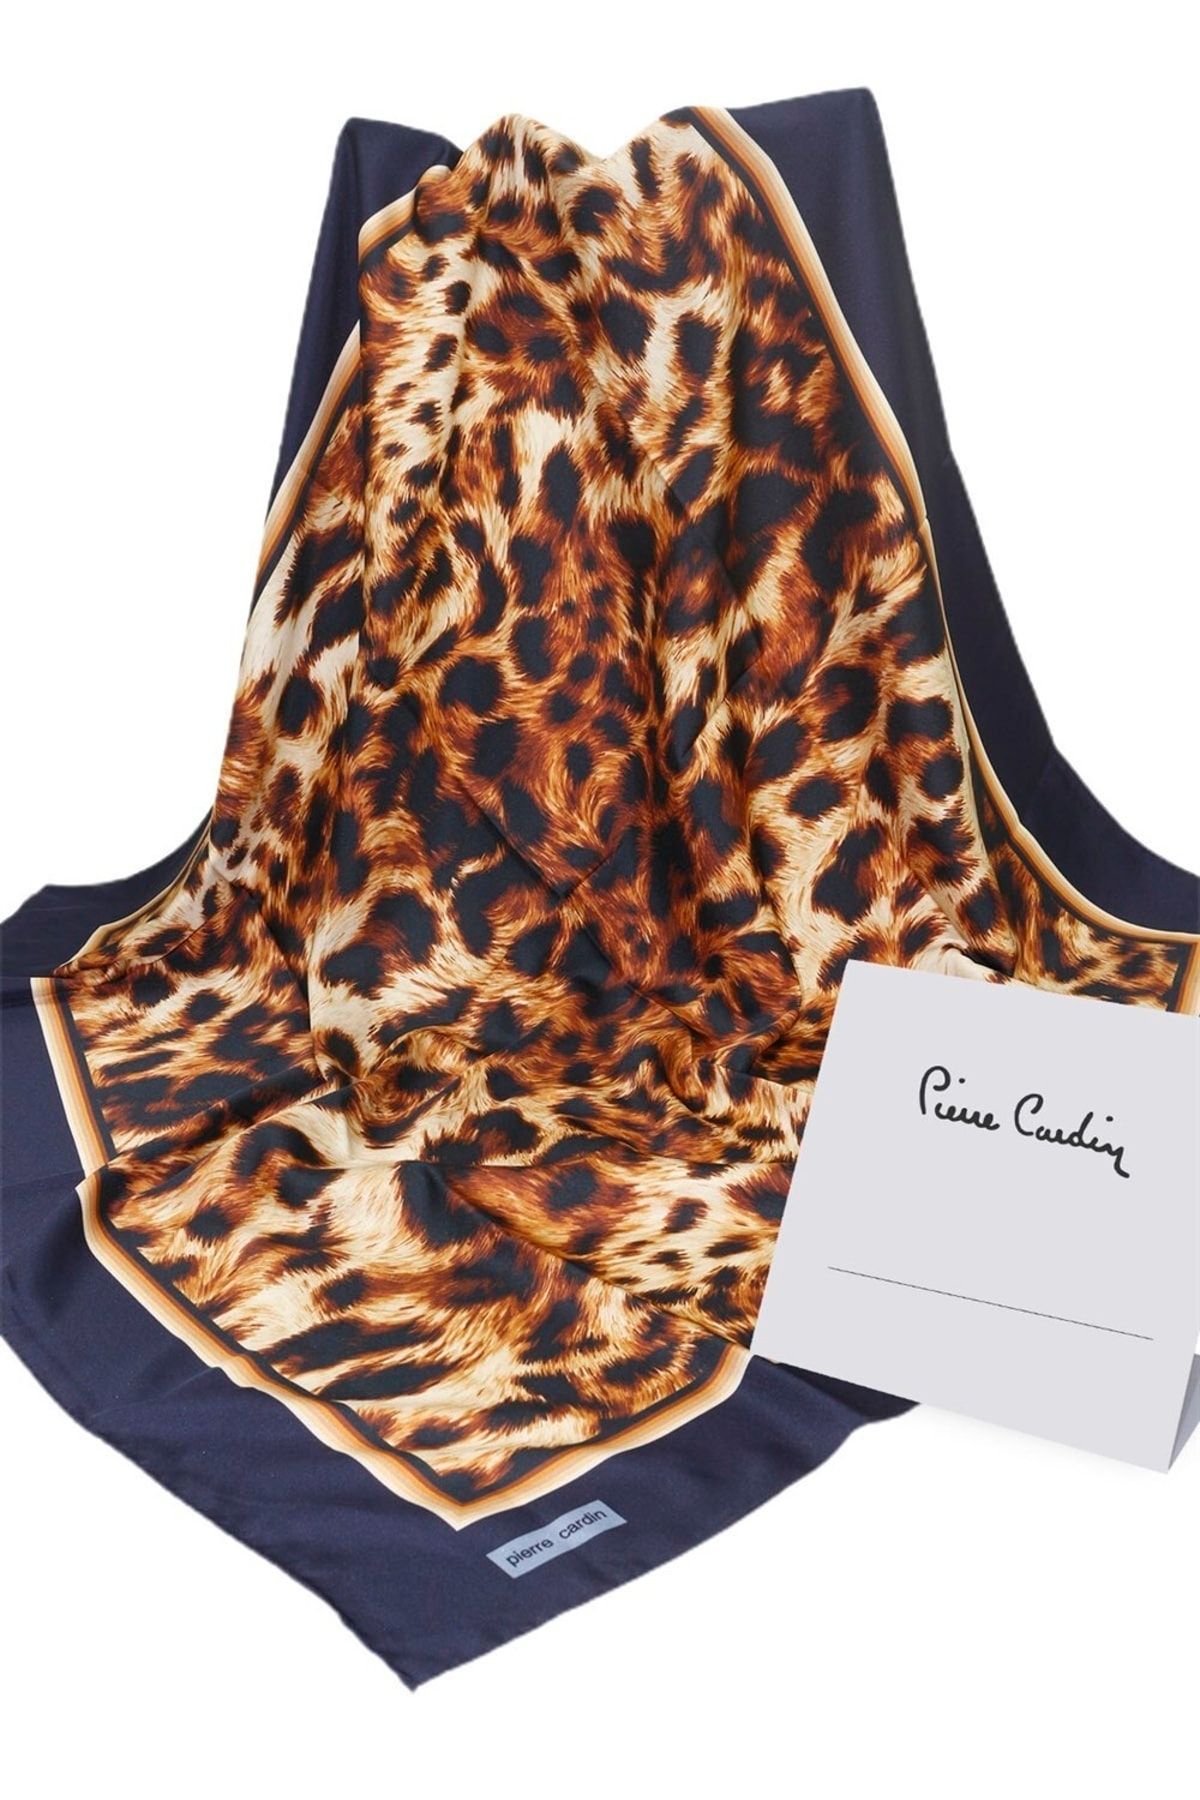 روسری پارچه پلی استر پلنگی زنانه پیر کاردین Pierre Cardin (برند فرانسه)